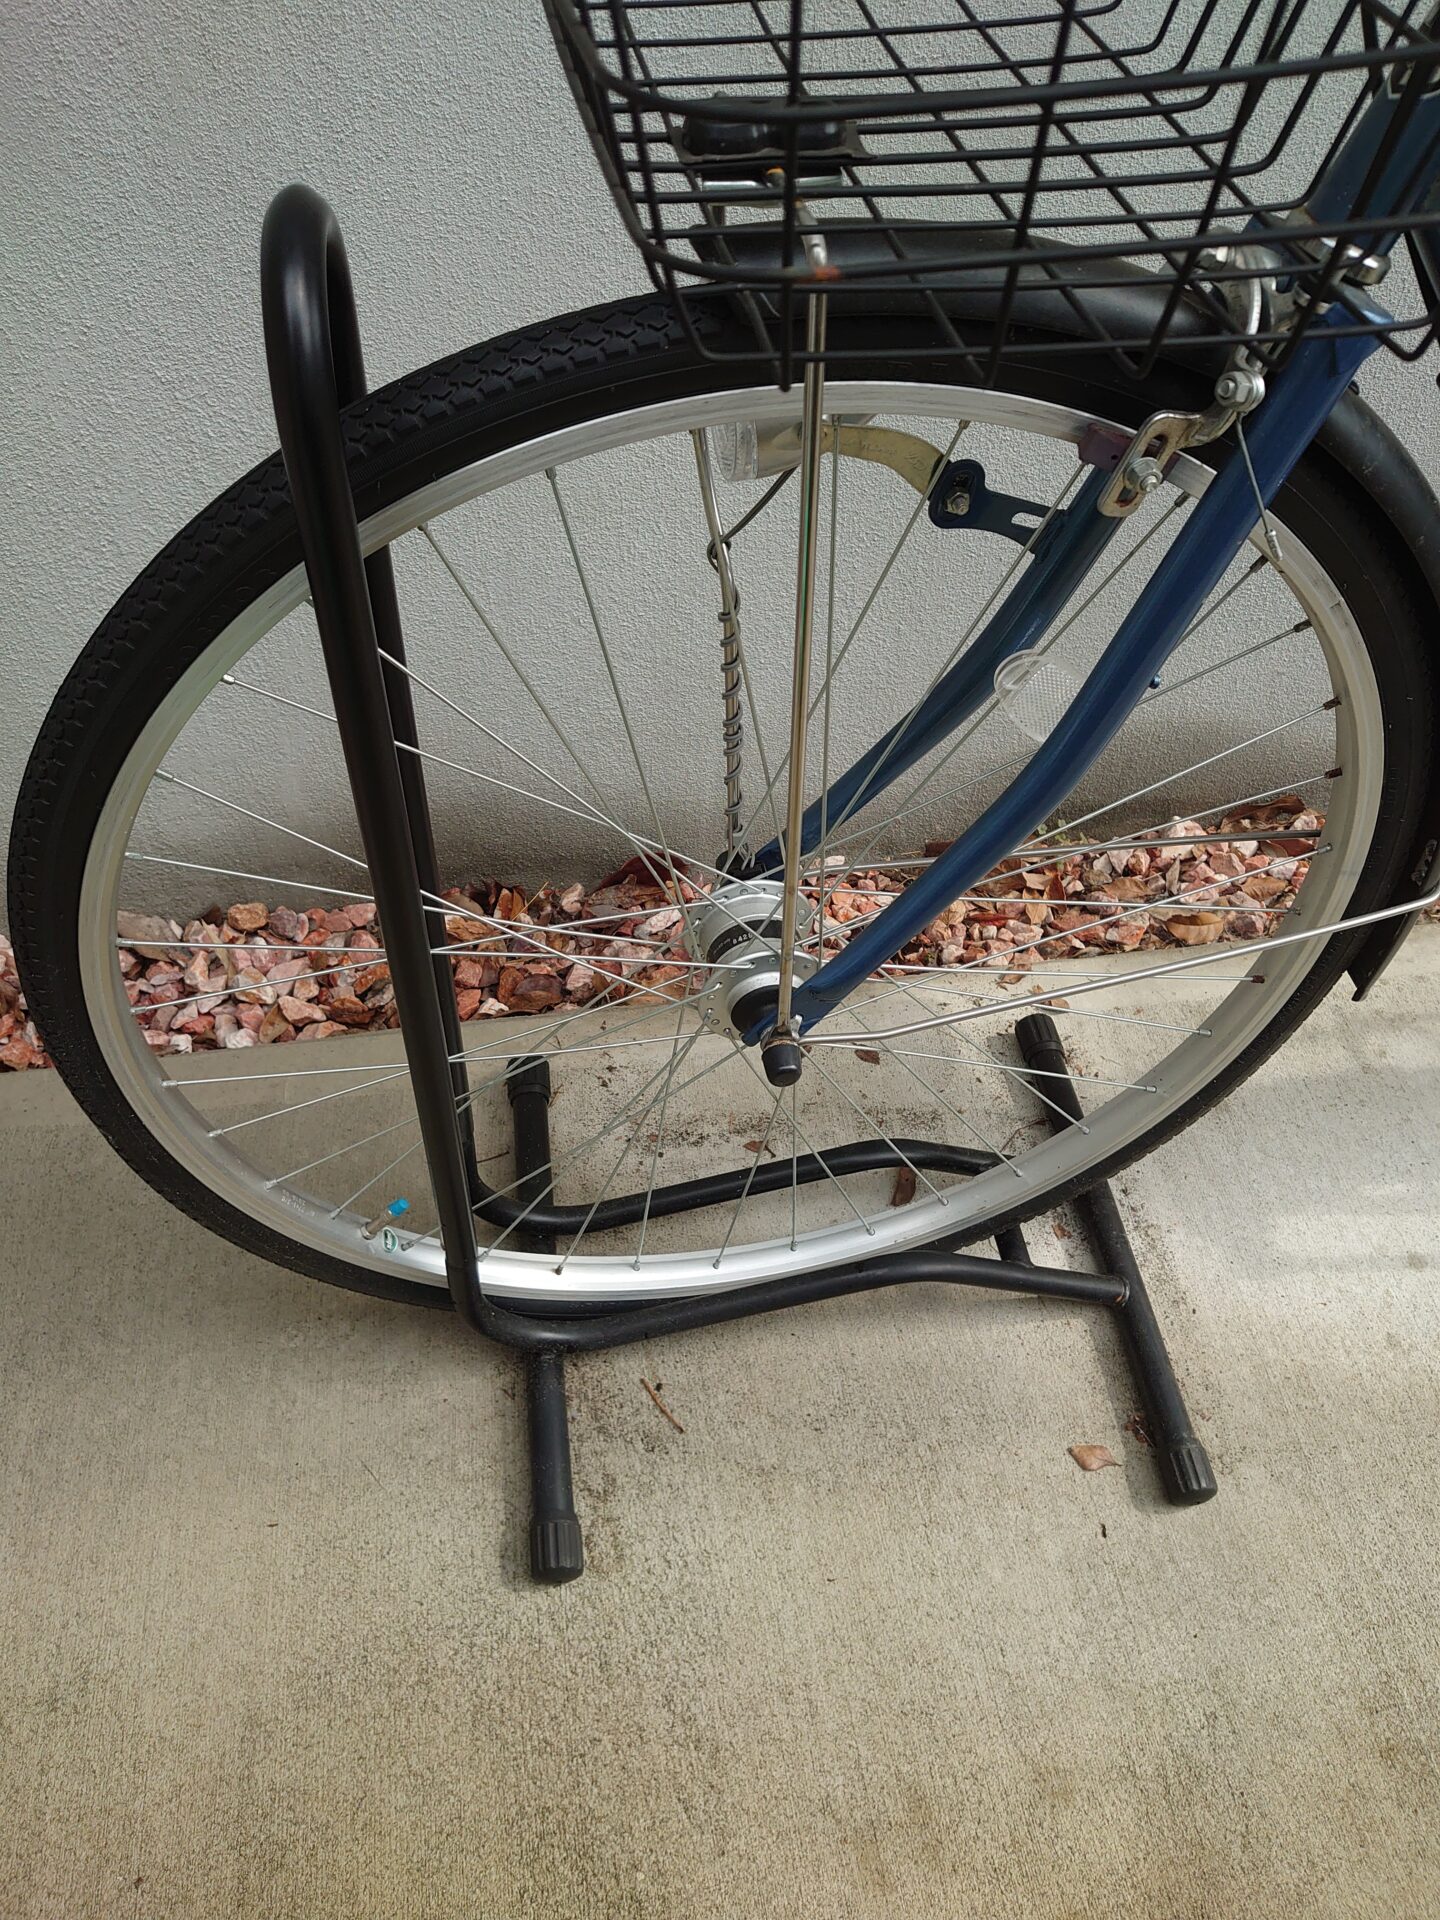 おすすめ ガレージ ゼロ L字型自転車スタンドgzmt28を使って 安く自転車の転倒防止を行う 強風や地震への対策 Nyablog